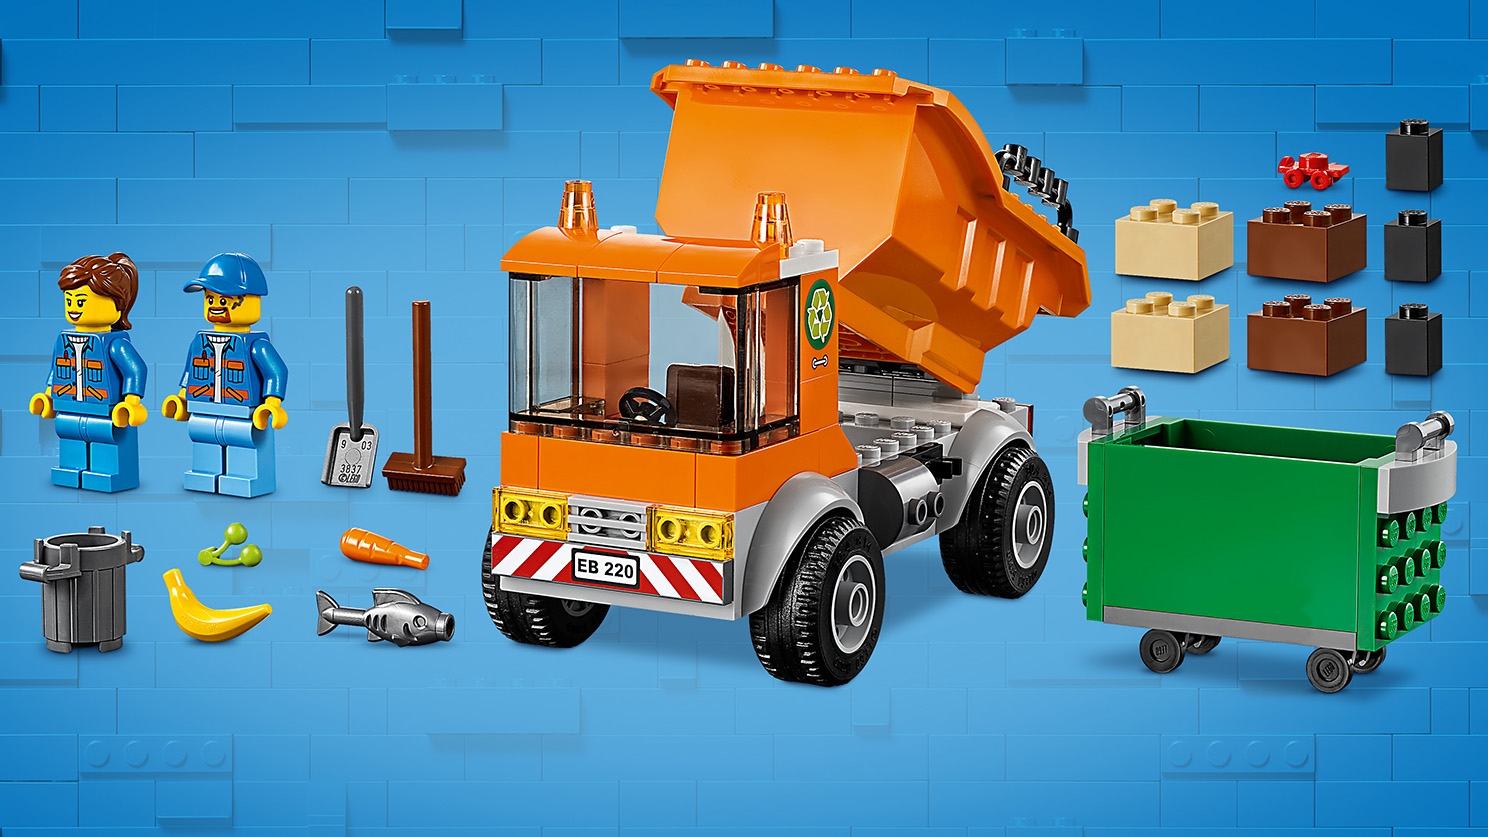 City - Le camion de poubelle (60220) LEGO